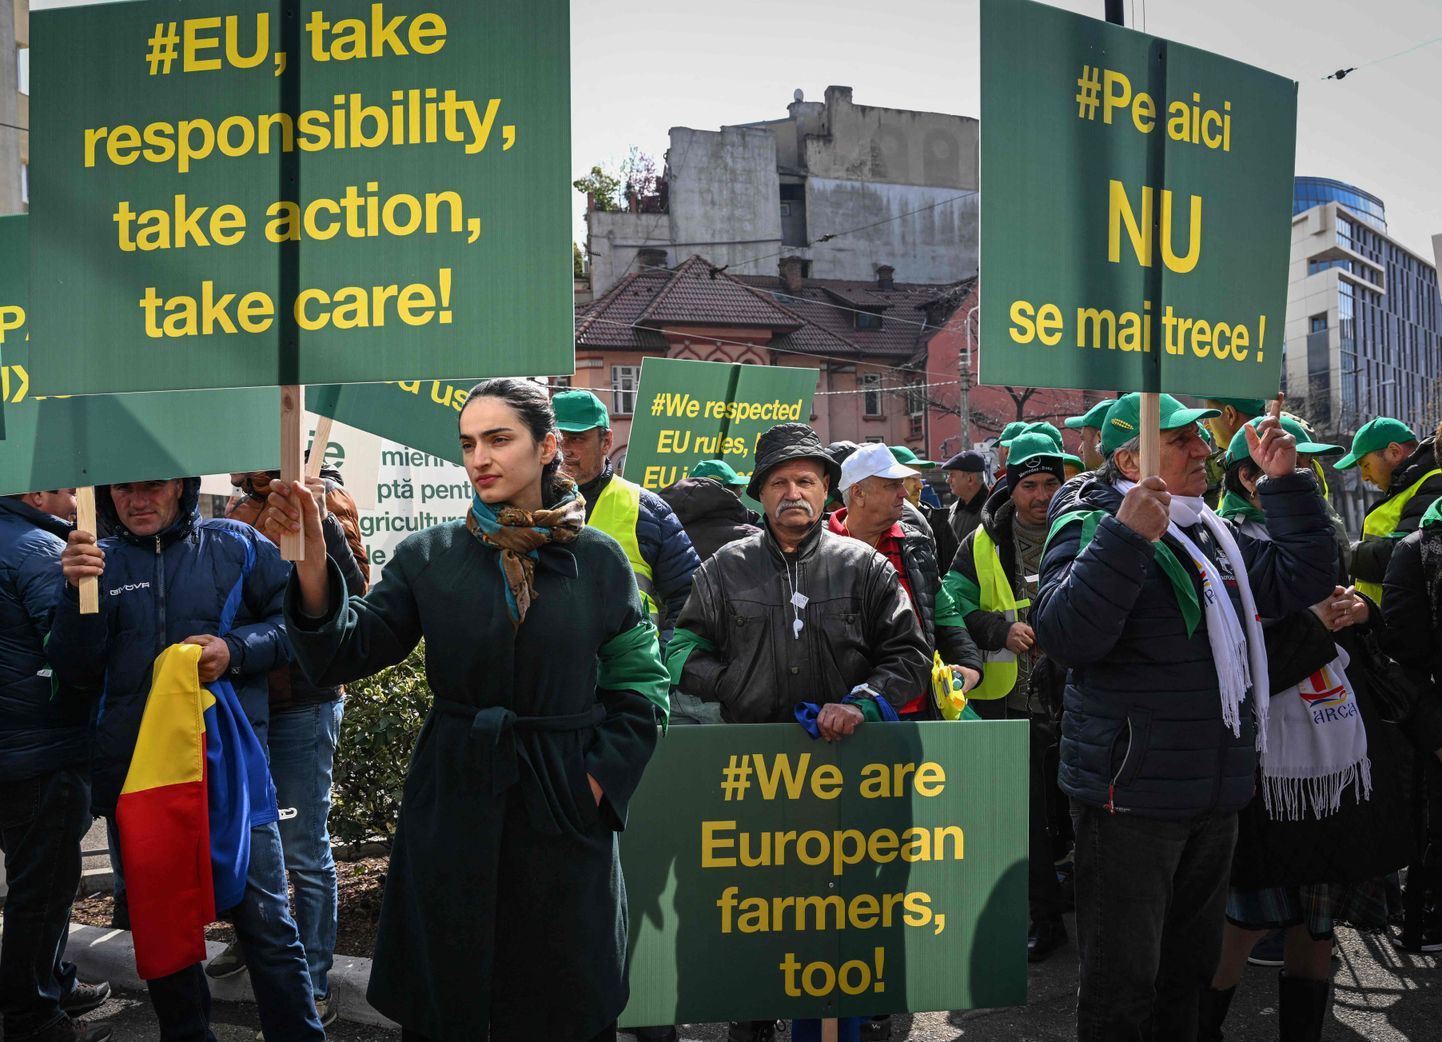 Rumeenia põllumajandustootjad protestimas  Euroopa Komisjoni peakorteri ees Bukarestis 7. aprillil 2023. aastal.  Põllumajandustootjad kogunevad üleriigiliselt protestima ELi fondidest saadud ebapiisava hüvitise vastu pärast seda, kui alates eelmise aasta keskpaigast kaotati täielikult tollimaksud kõikidele Ukrainast pärit kaupadele.